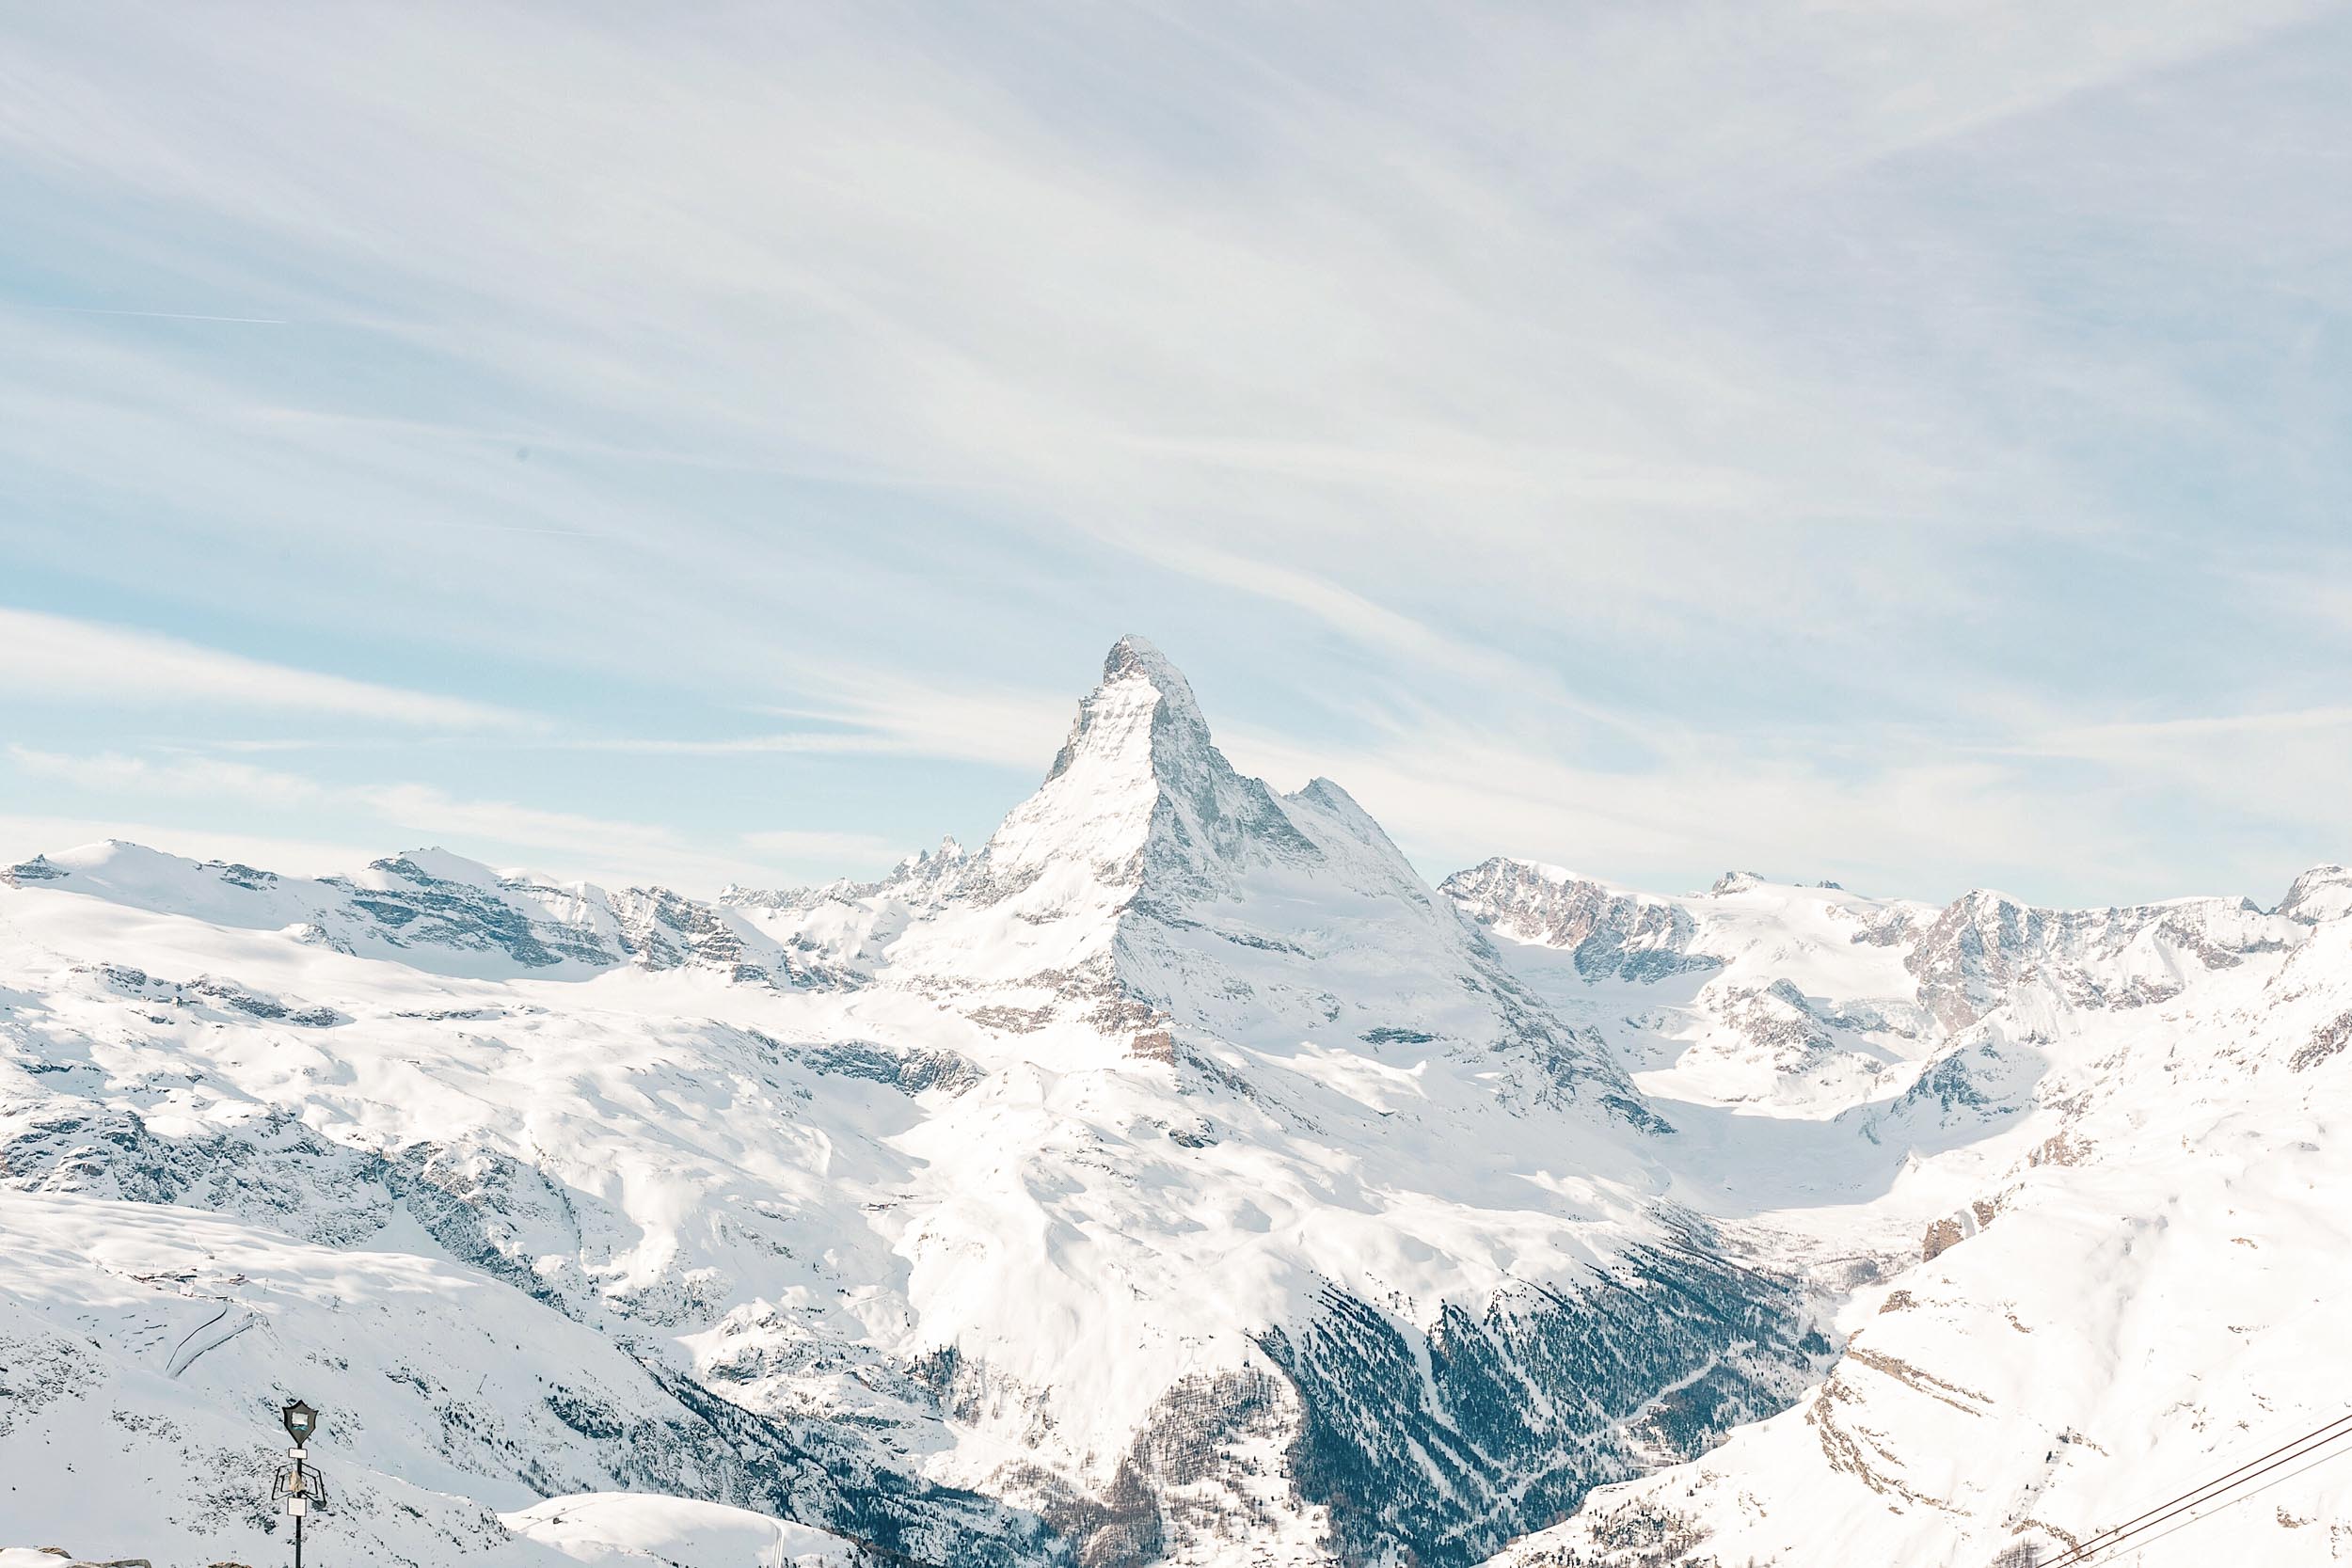 Zermatt, home of the Matterhorn and the perfect winter escape!